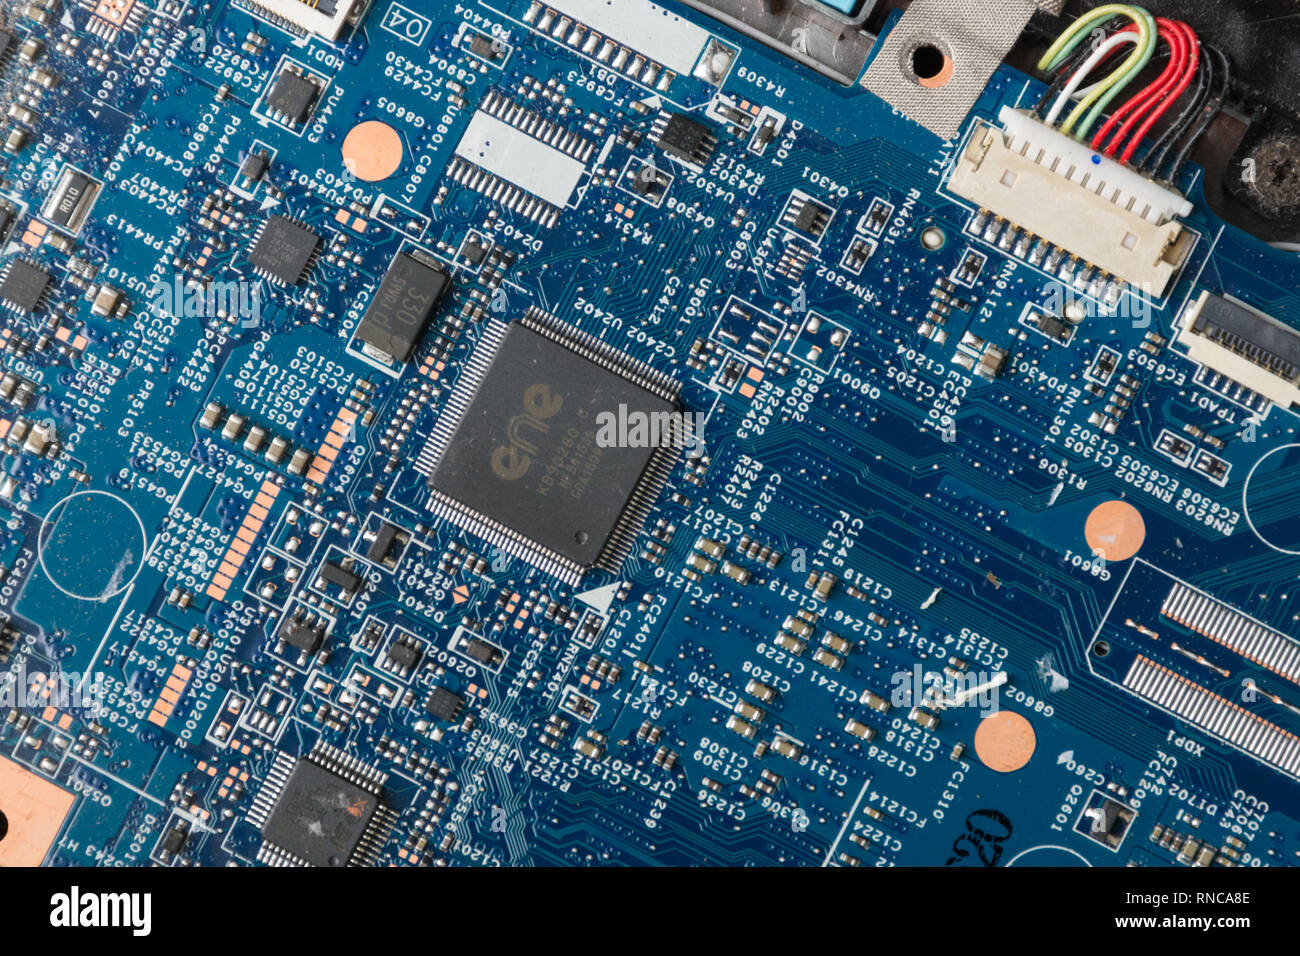 Close-up de una motherboard (placa de circuito impreso) desde un ordenador portátil Foto de stock